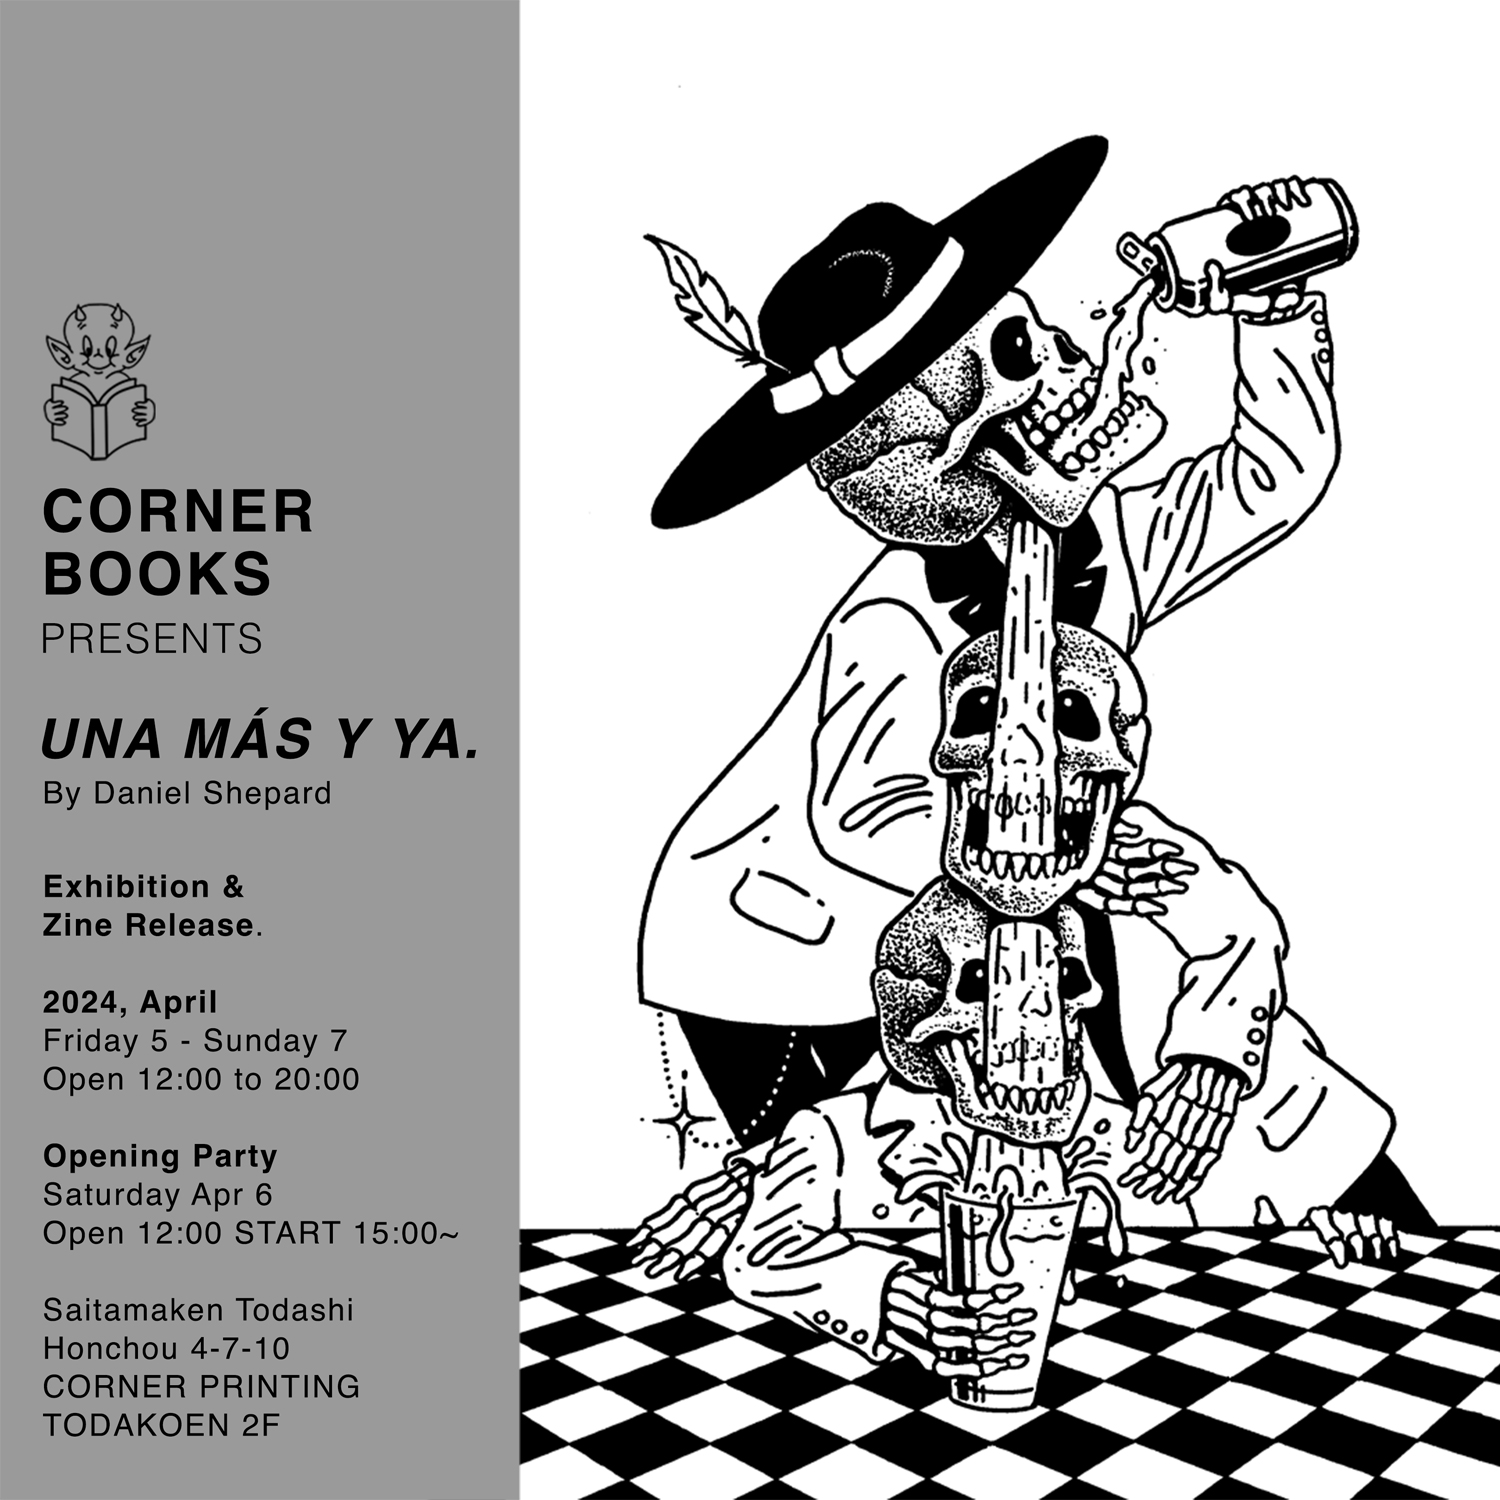 CORNER BOOKS PRESENTS UNA MÁS Y YA. By Daniel Shepard Exhibition & Zine Release.